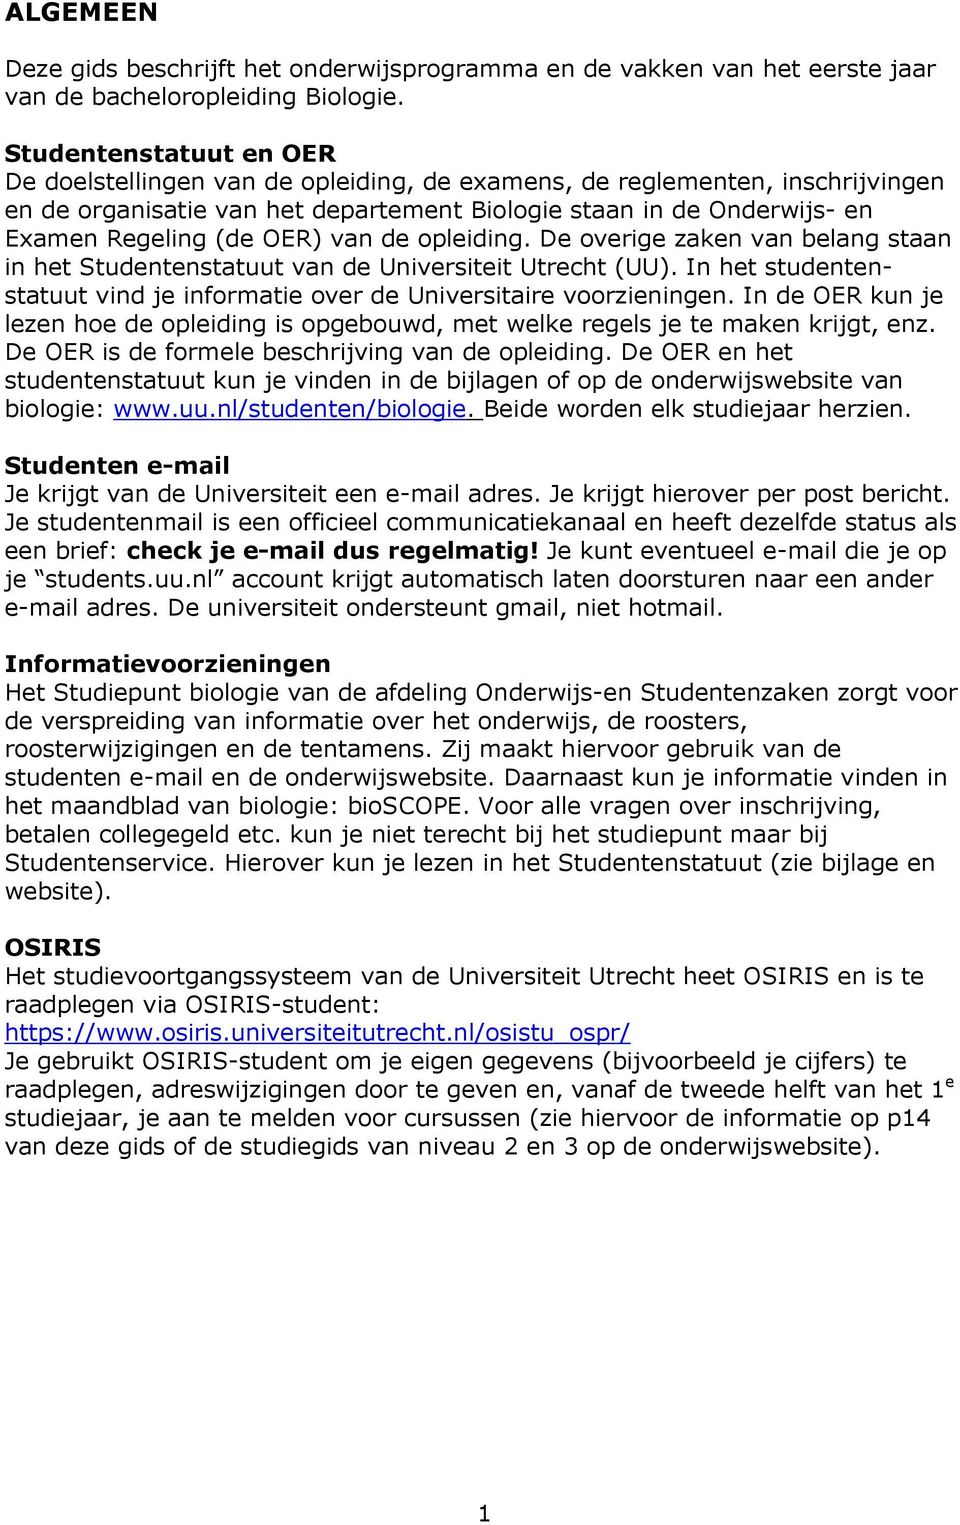 OER) van de opleiding. De overige zaken van belang staan in het Studentenstatuut van de Universiteit Utrecht (UU). In het studentenstatuut vind je informatie over de Universitaire voorzieningen.